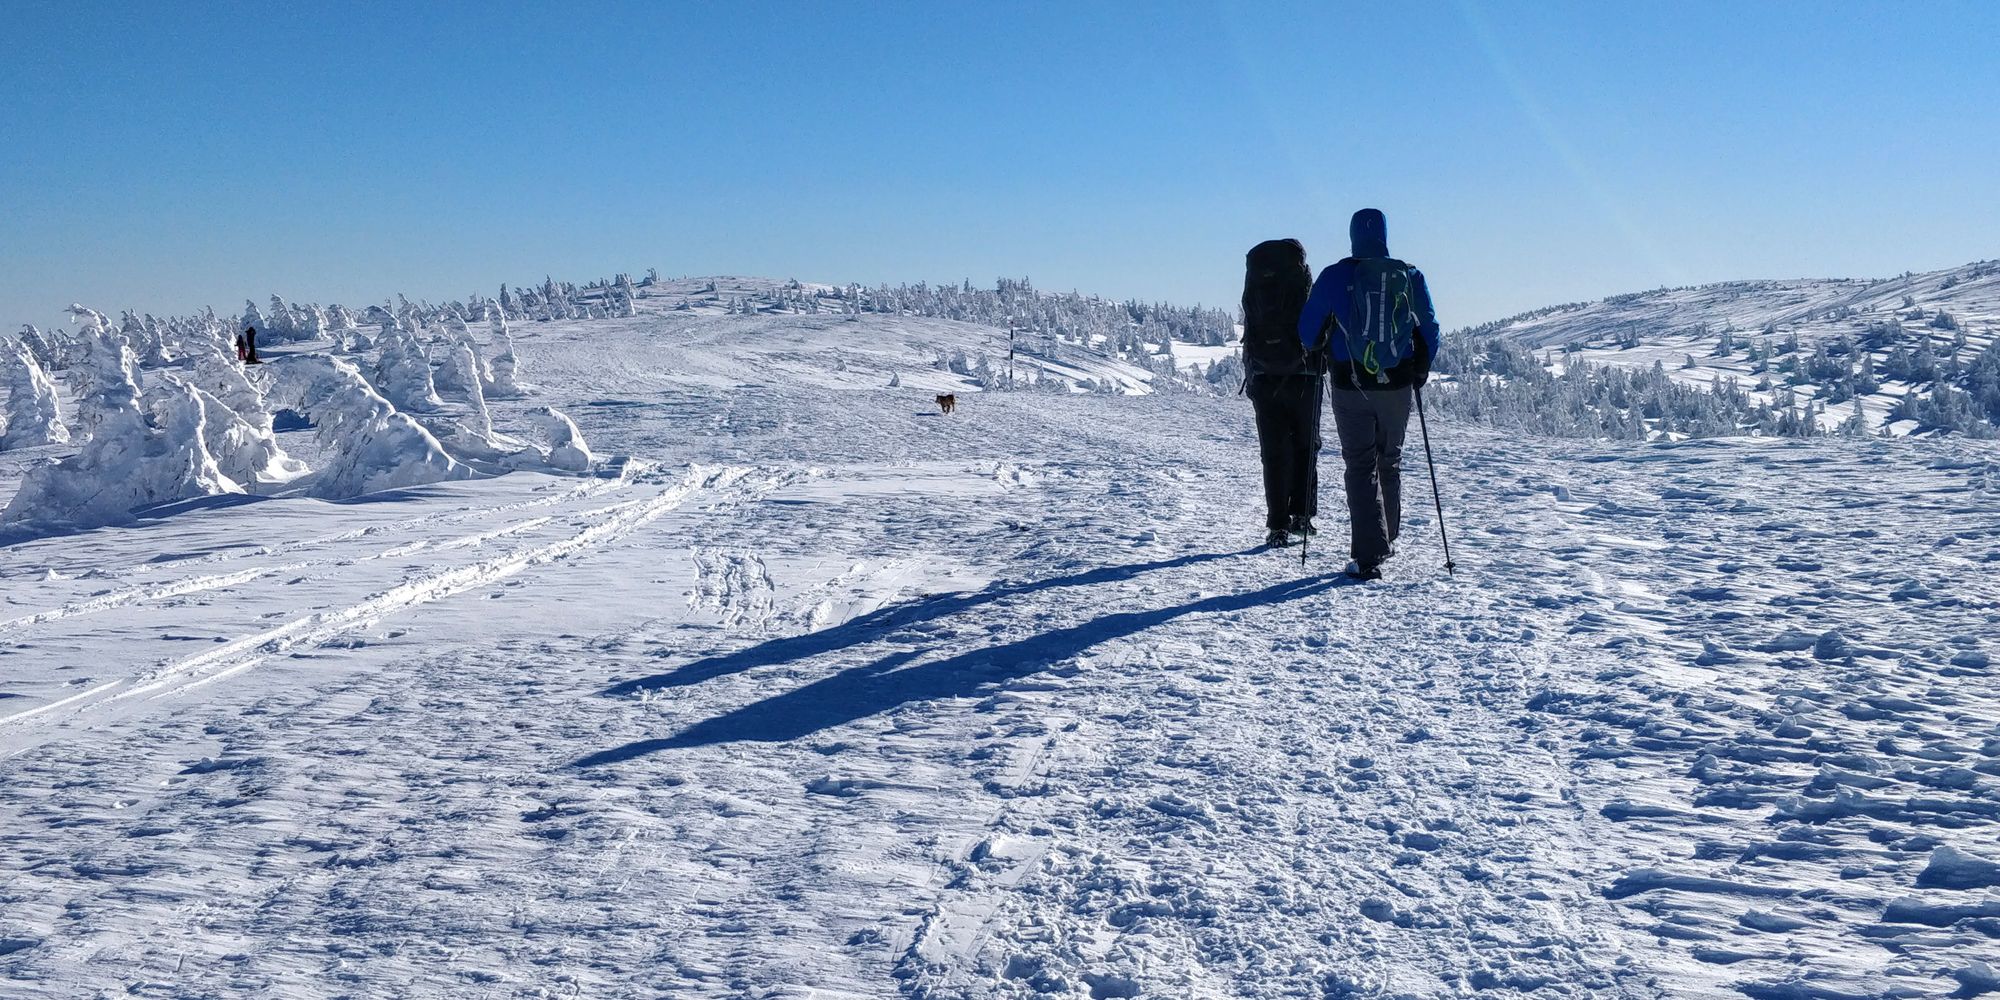 A Peak With Surprise: Vlădeasa, from Rogojel, in Winter Season (Jan 2022)